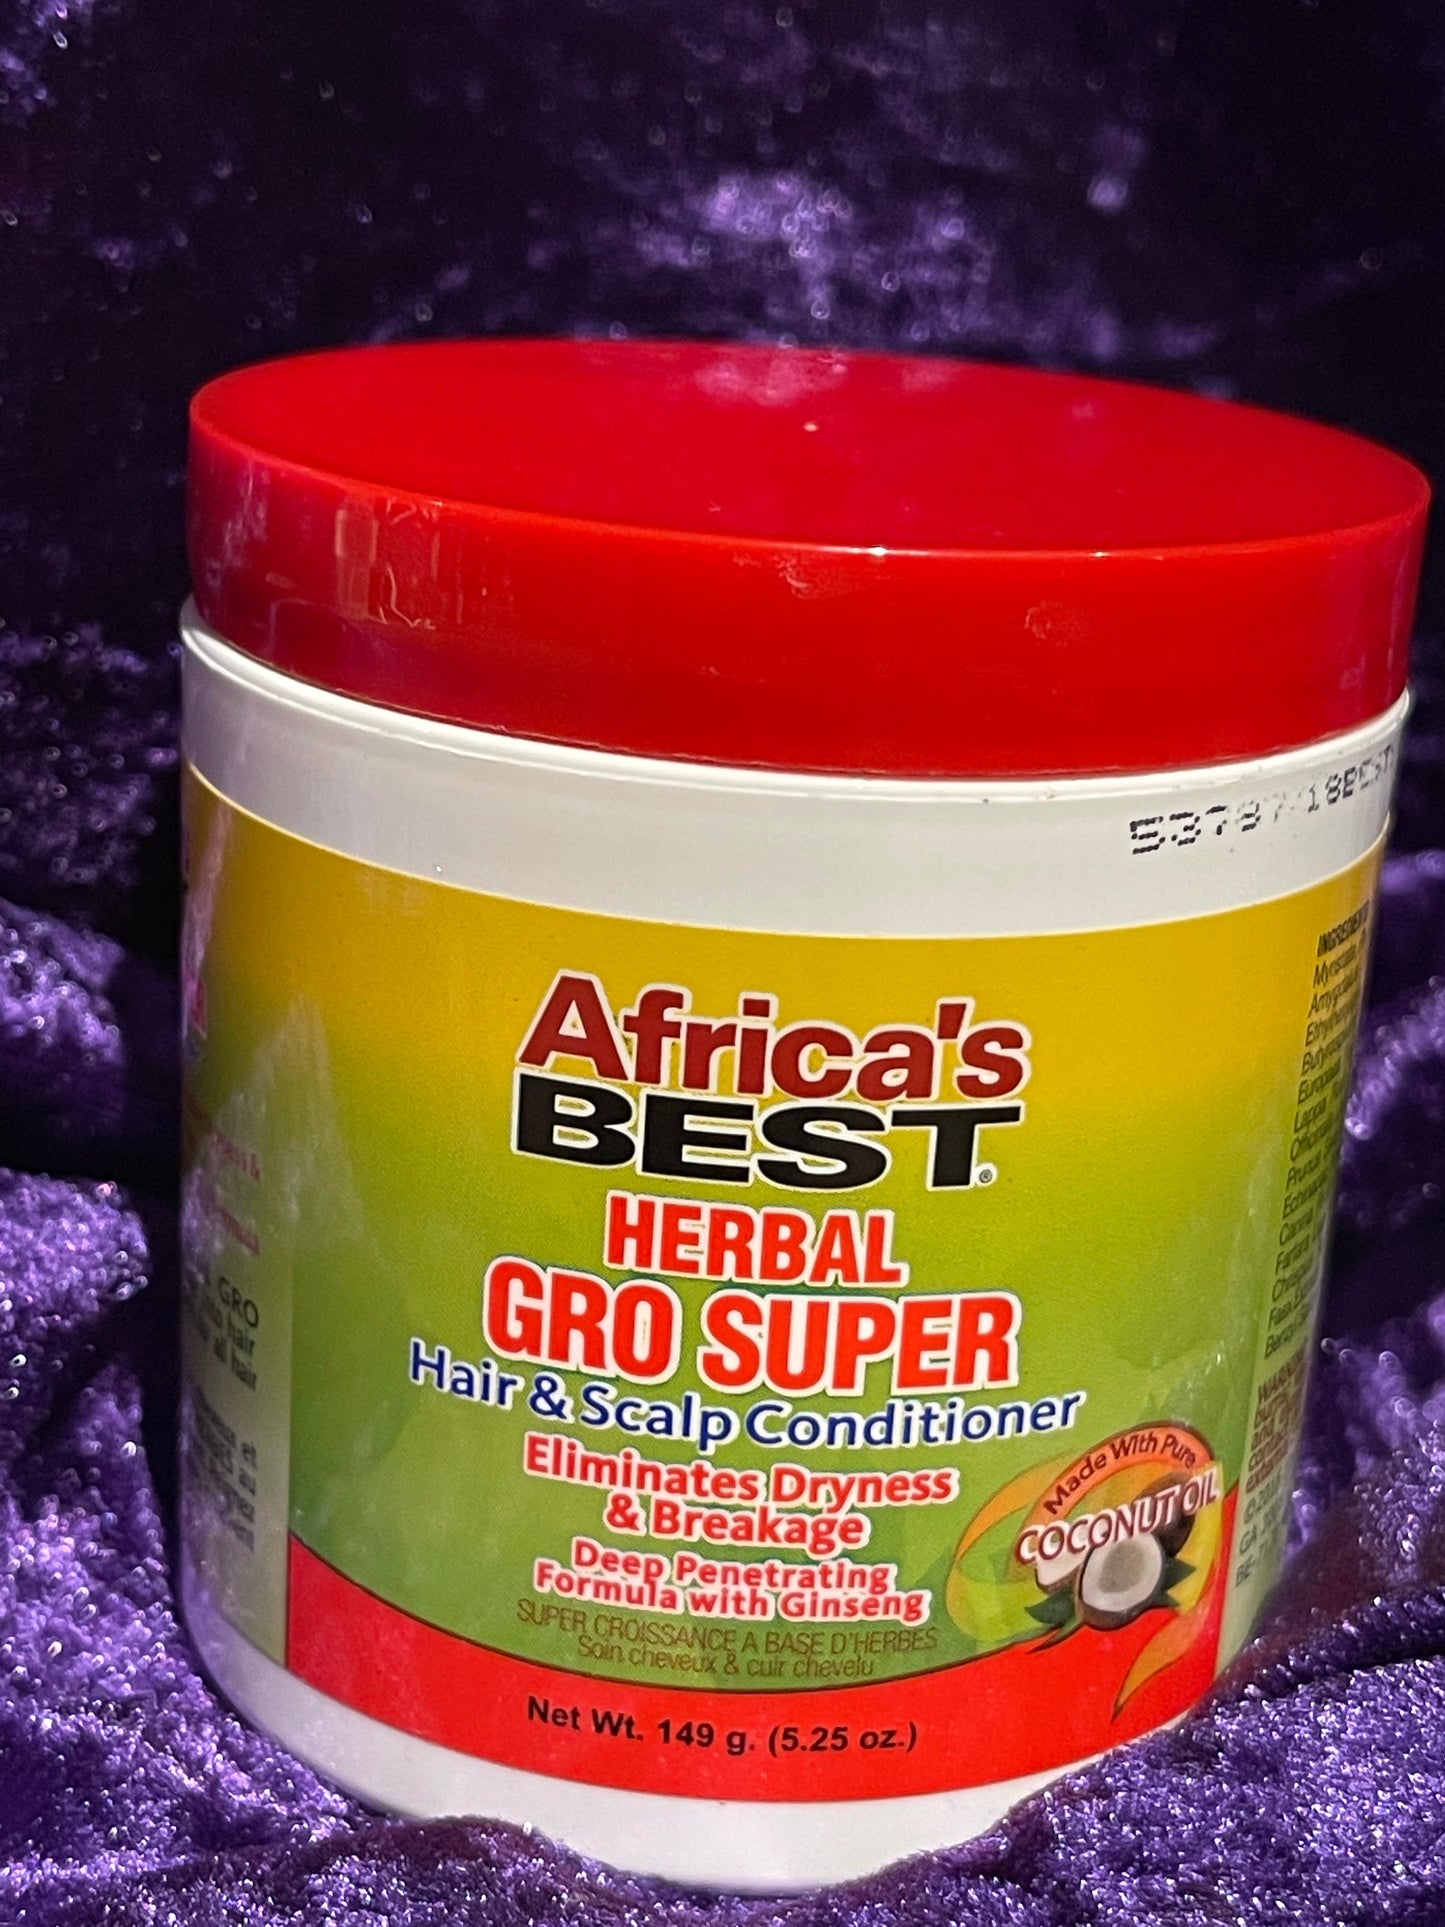 Africa’s Best Herbal Gro Super Hair & Scalp Conditioner